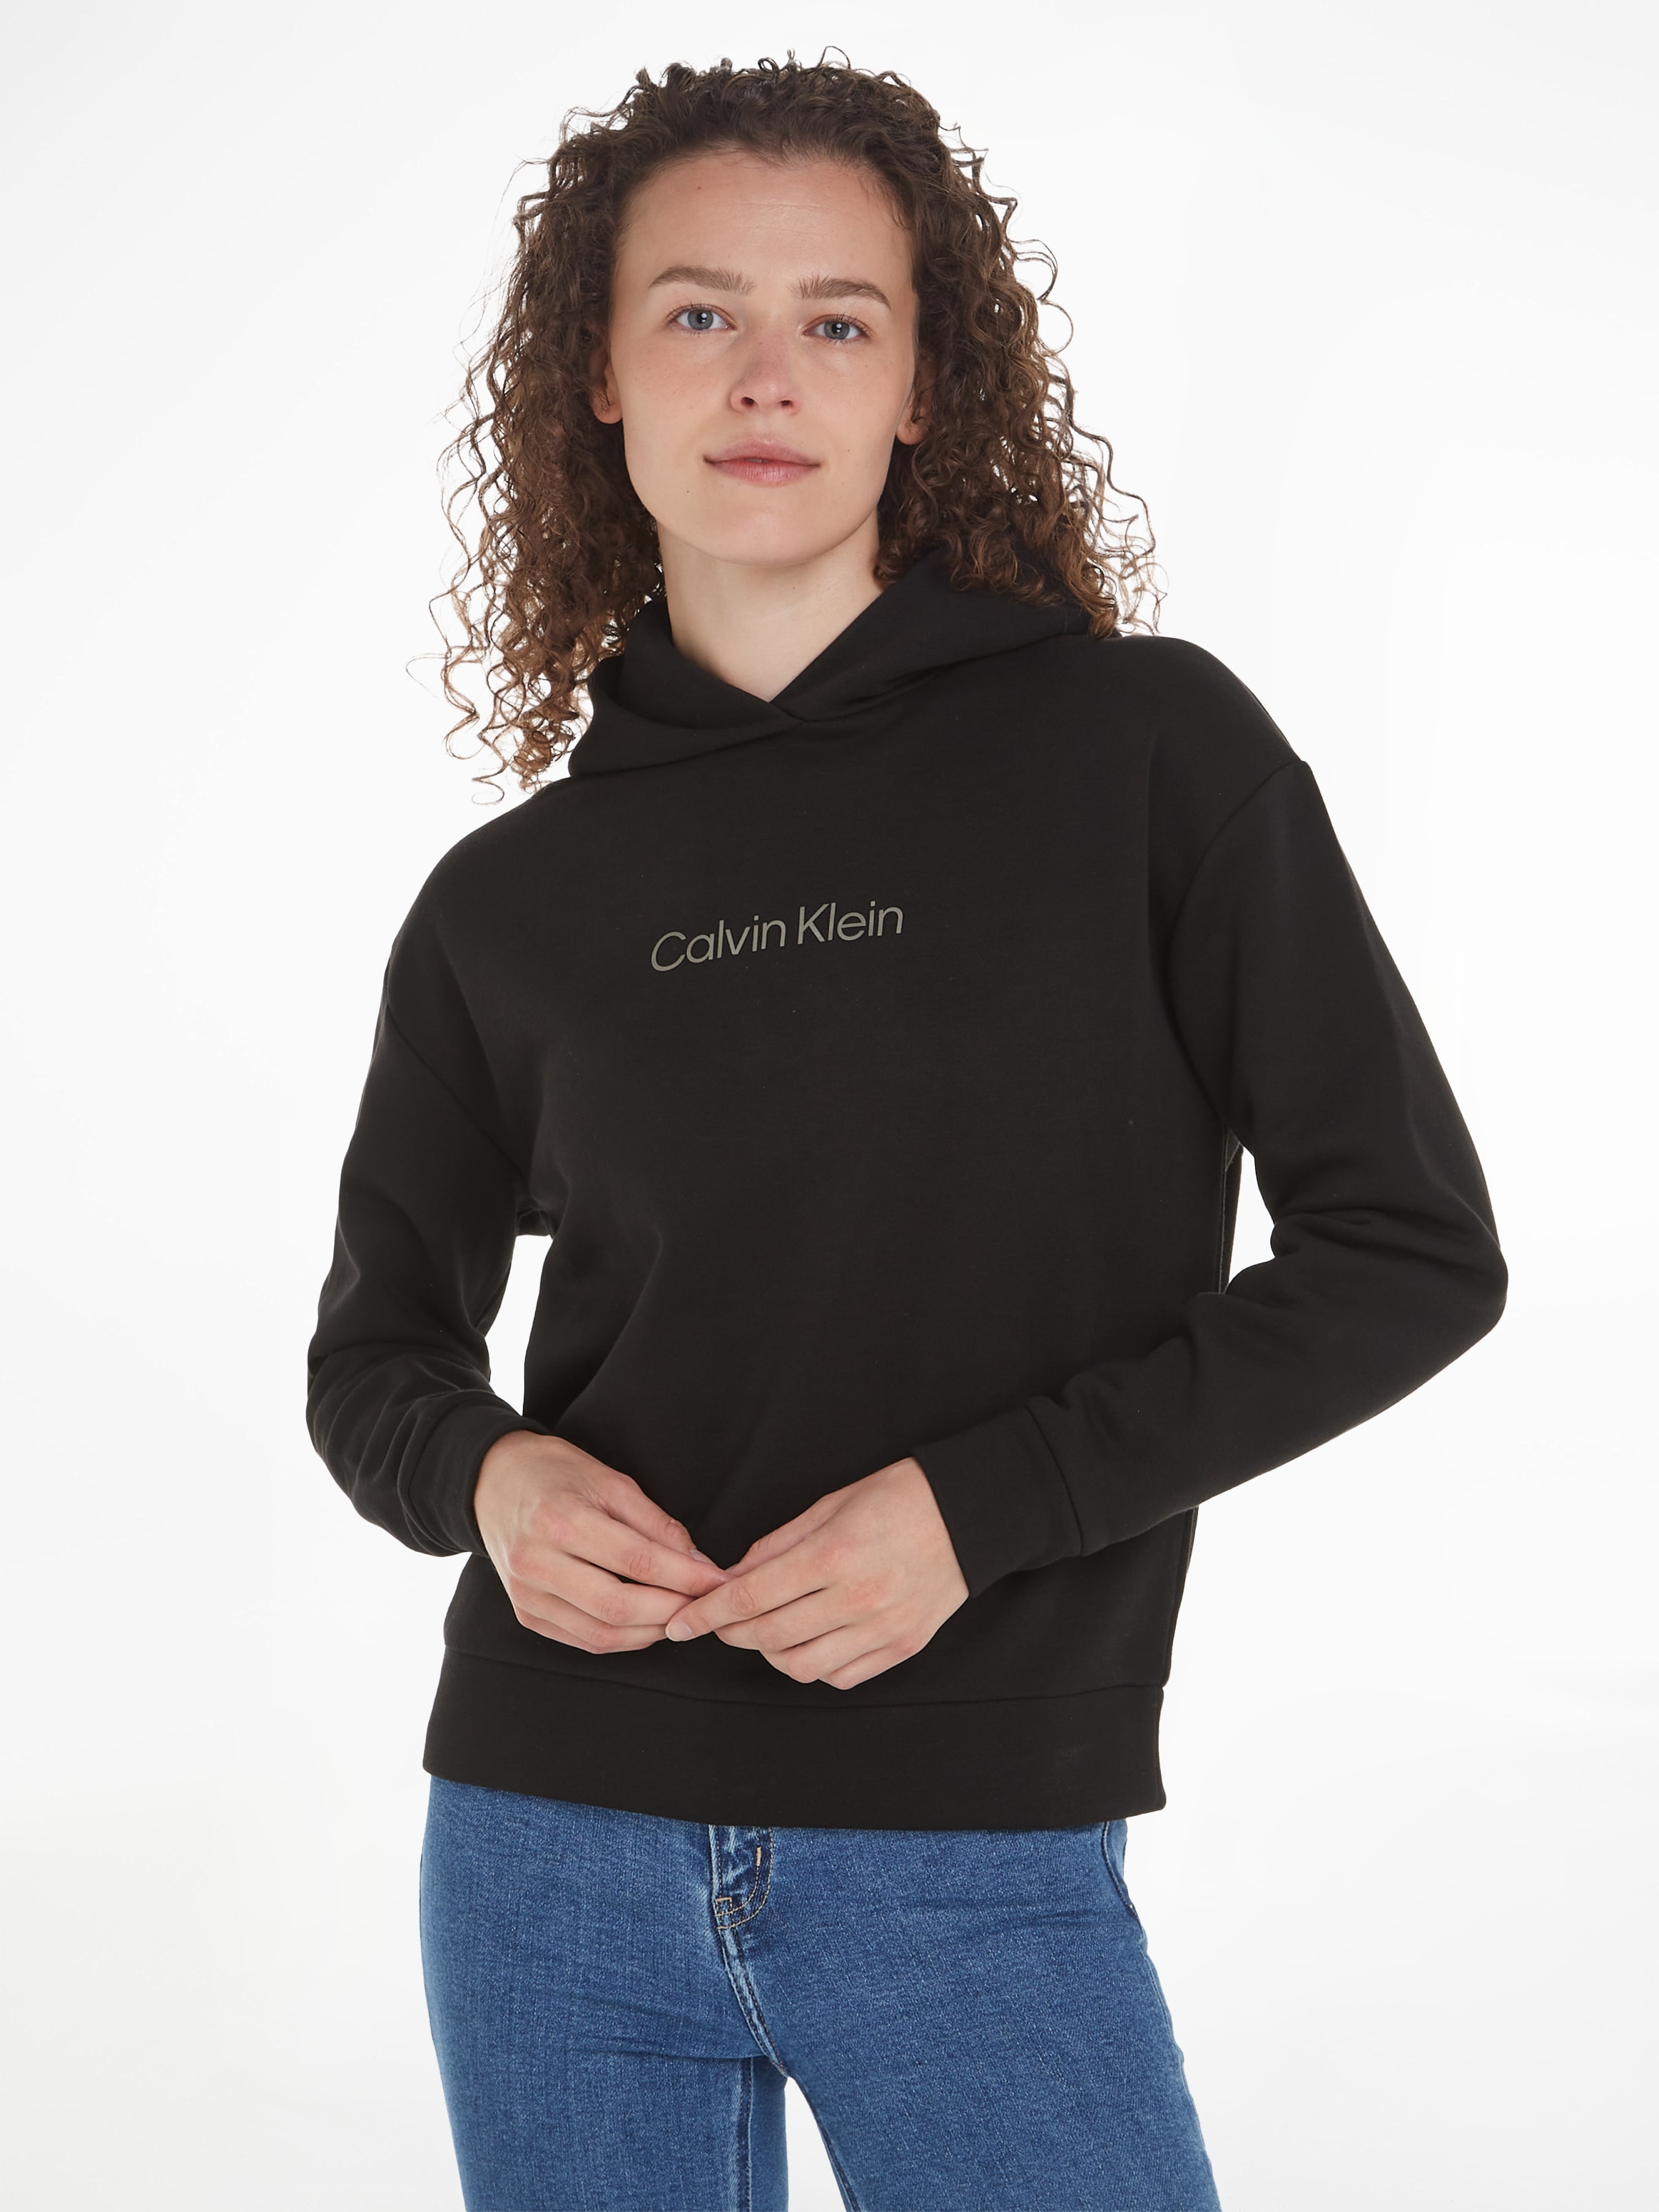 LOGO Klein Calvin Calvin Brust Klein mit der »HERO shoppen Print auf Kapuzensweatshirt METALLIC HOODIE«,